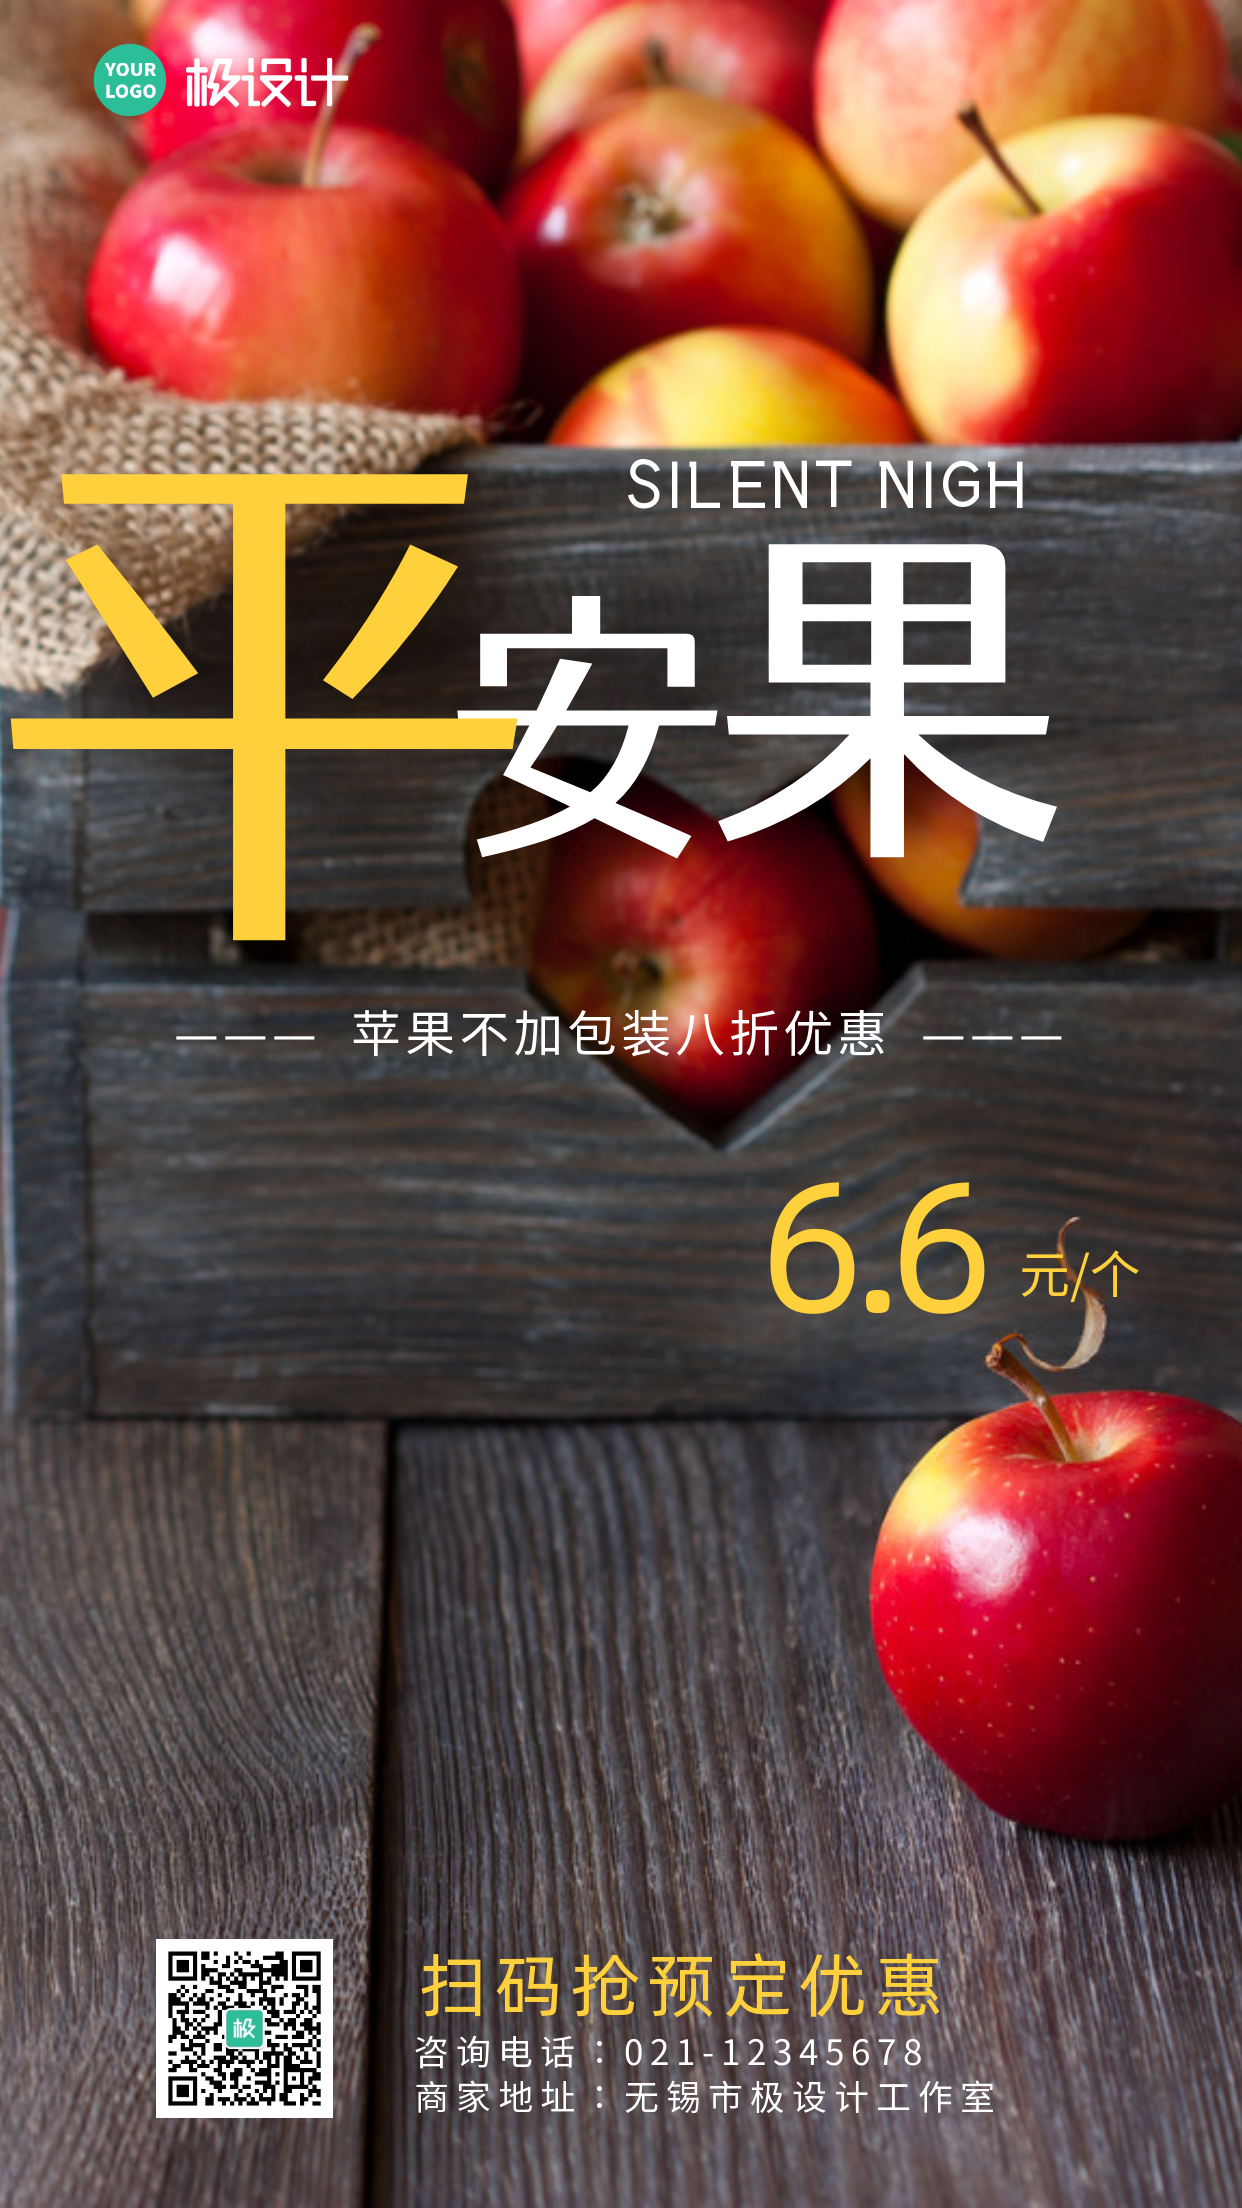 深色摄影平安夜水果店苹果促销手机海报